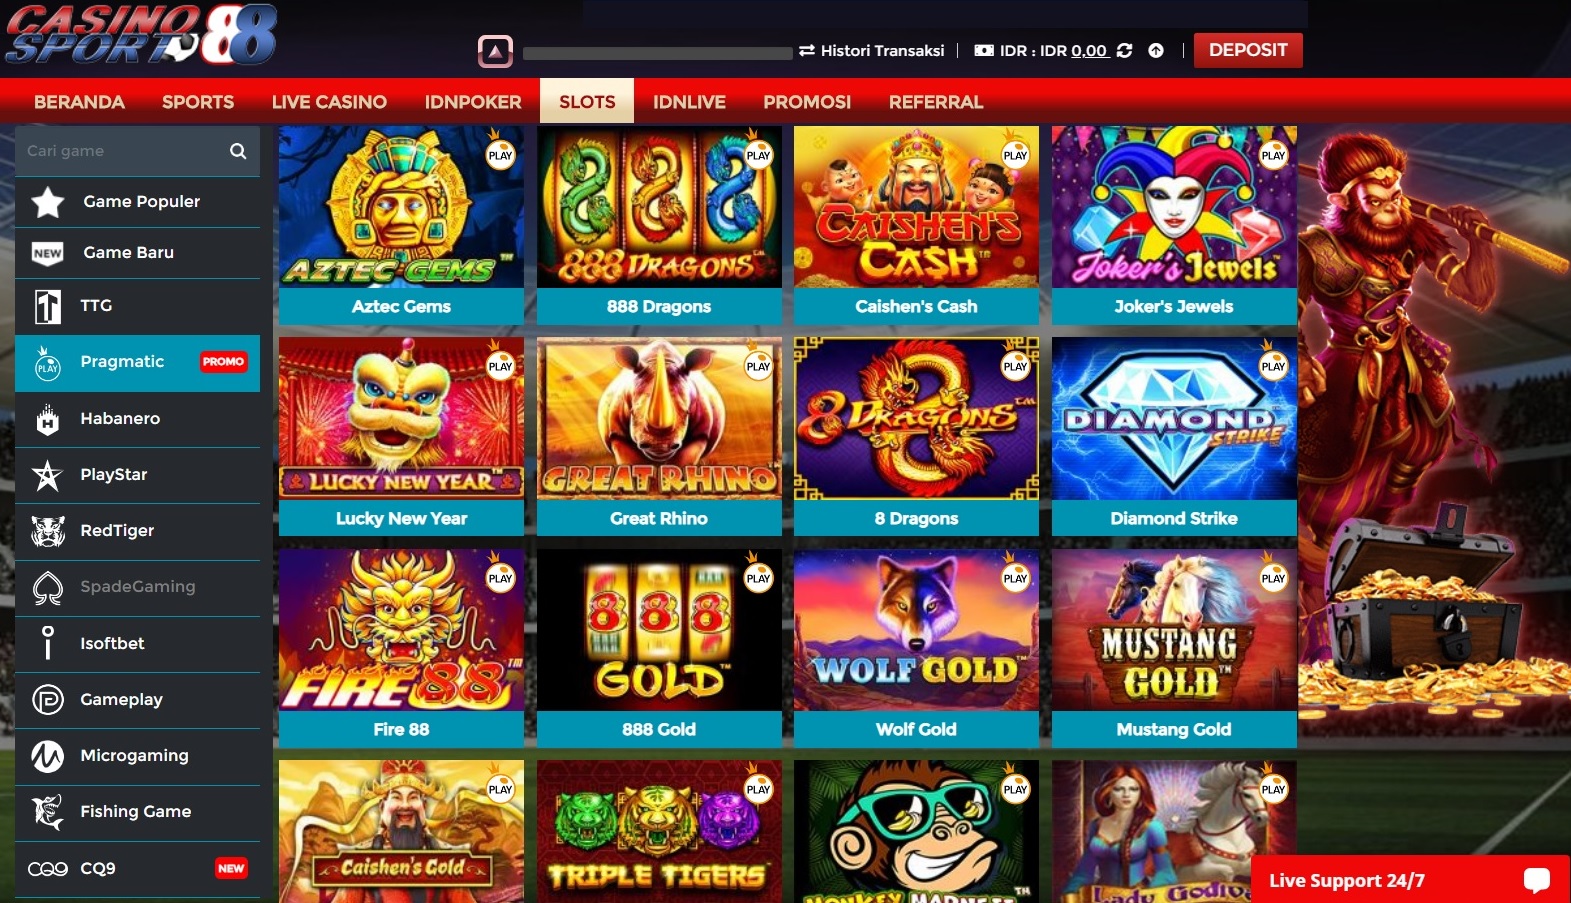 Game Situs Judi Slot Online, Judi Online Terpercaya Populer - 9 Game Yang Jadi Favorit Di Indonesia saat ini!